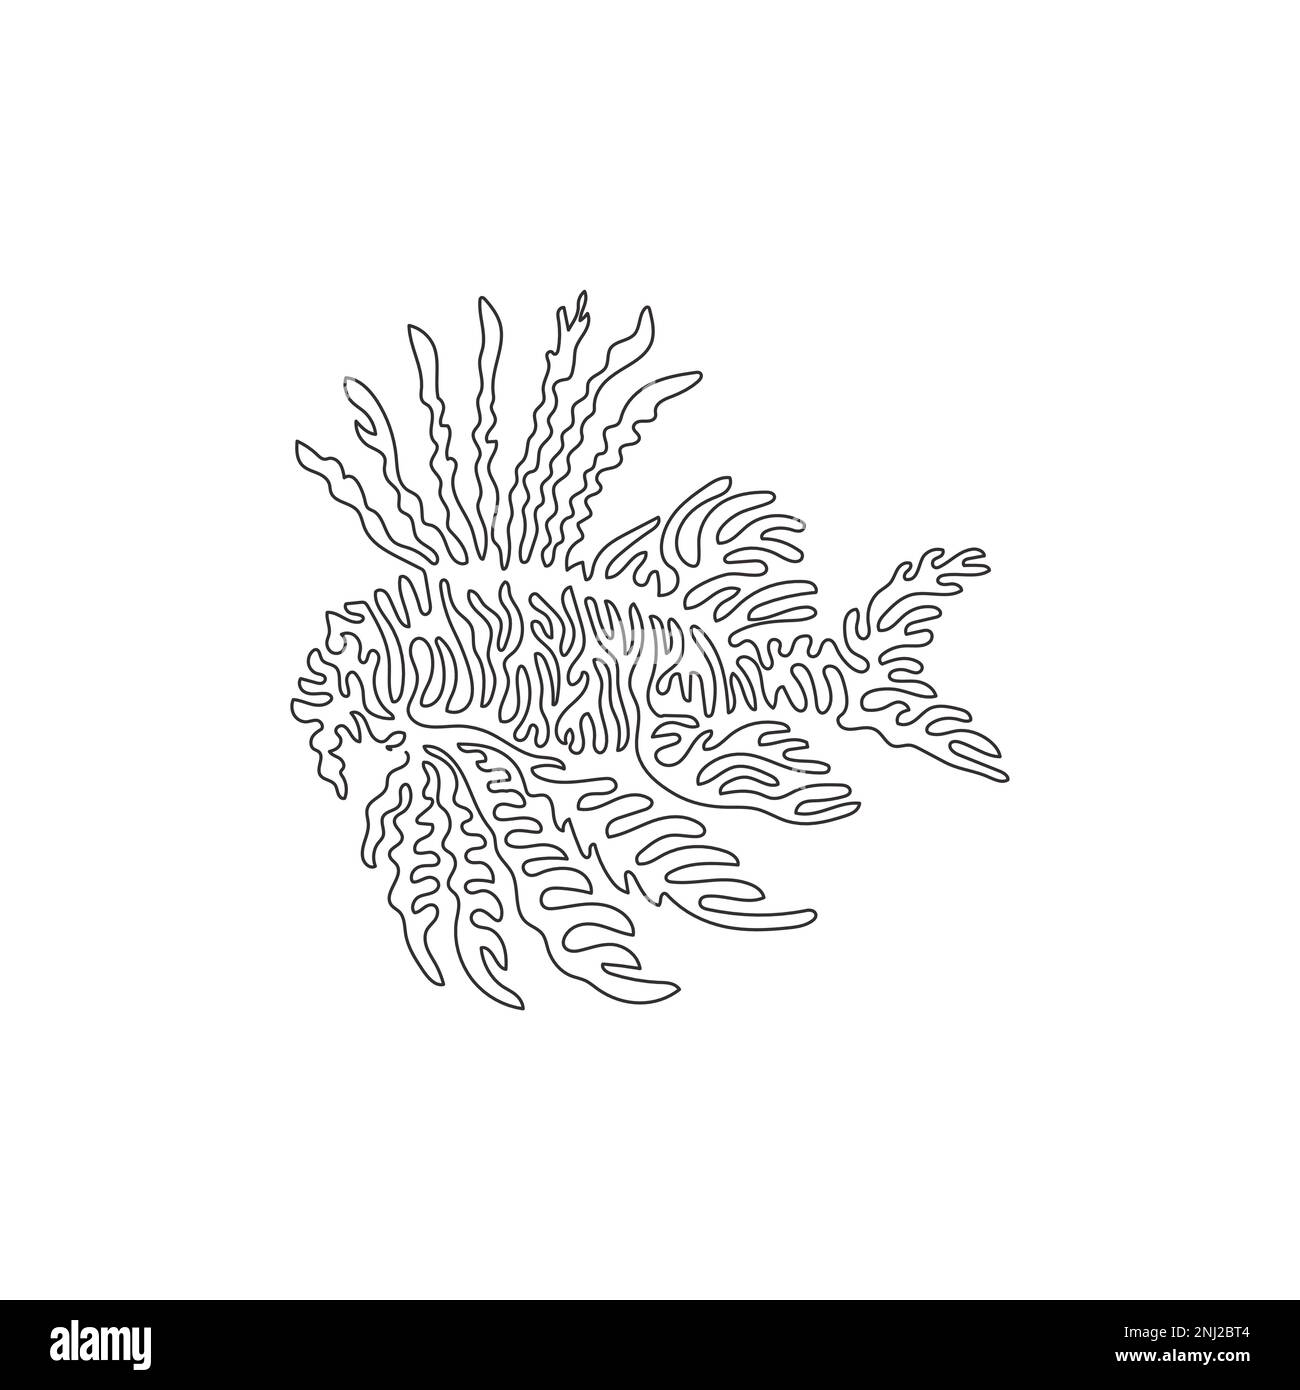 Eine einzige Strichzeichnung der abstrakten Kunst der Meereslebewesen. Durchgehende Linienzeichnung grafischer Designvektoren Darstellung giftiger Meeresfische Stock Vektor